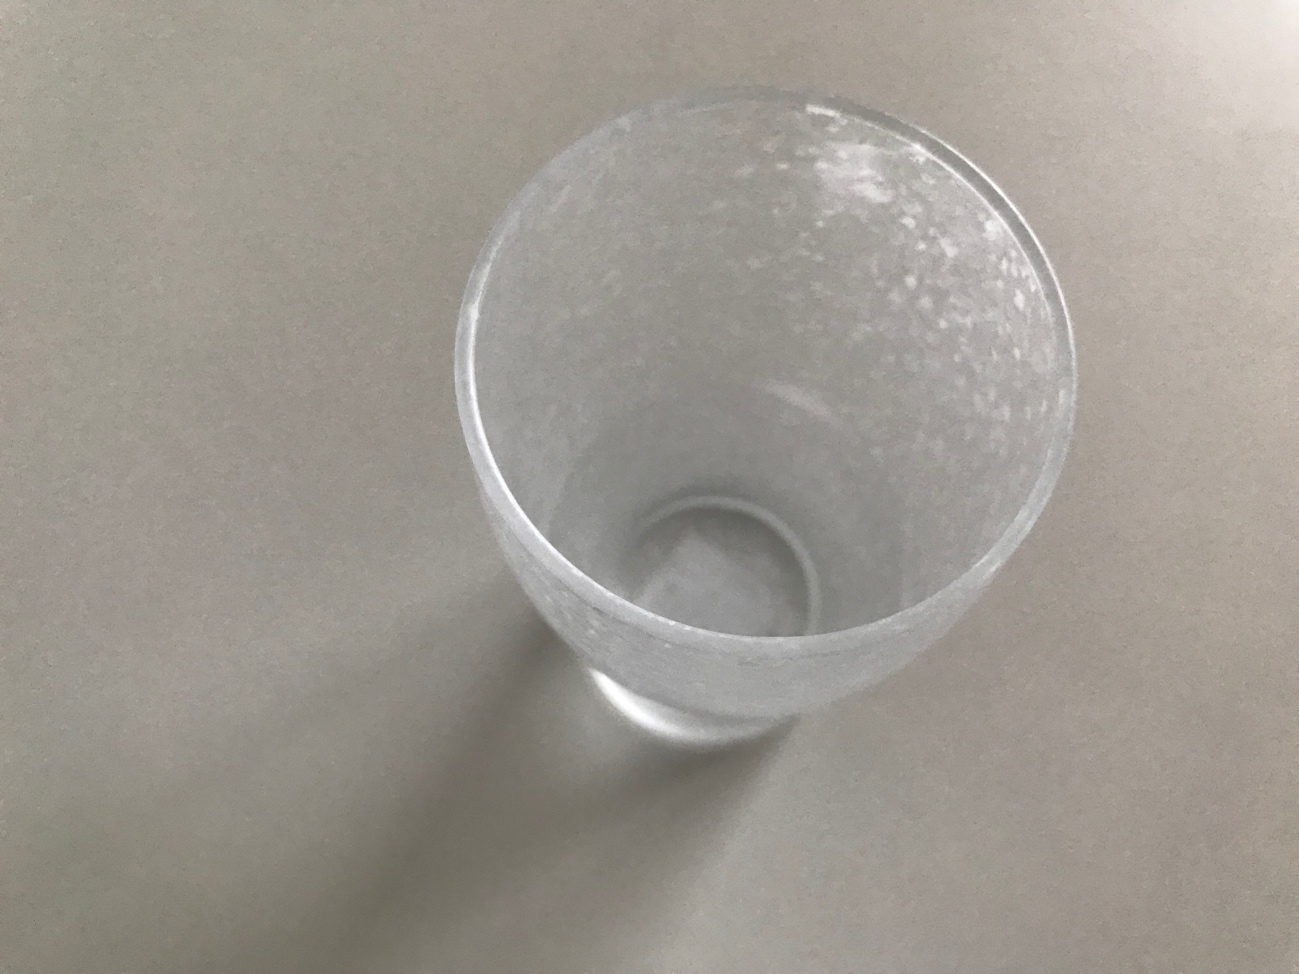 「きらめきビアグラス(250ml)」はフタのないグラスタンブラー